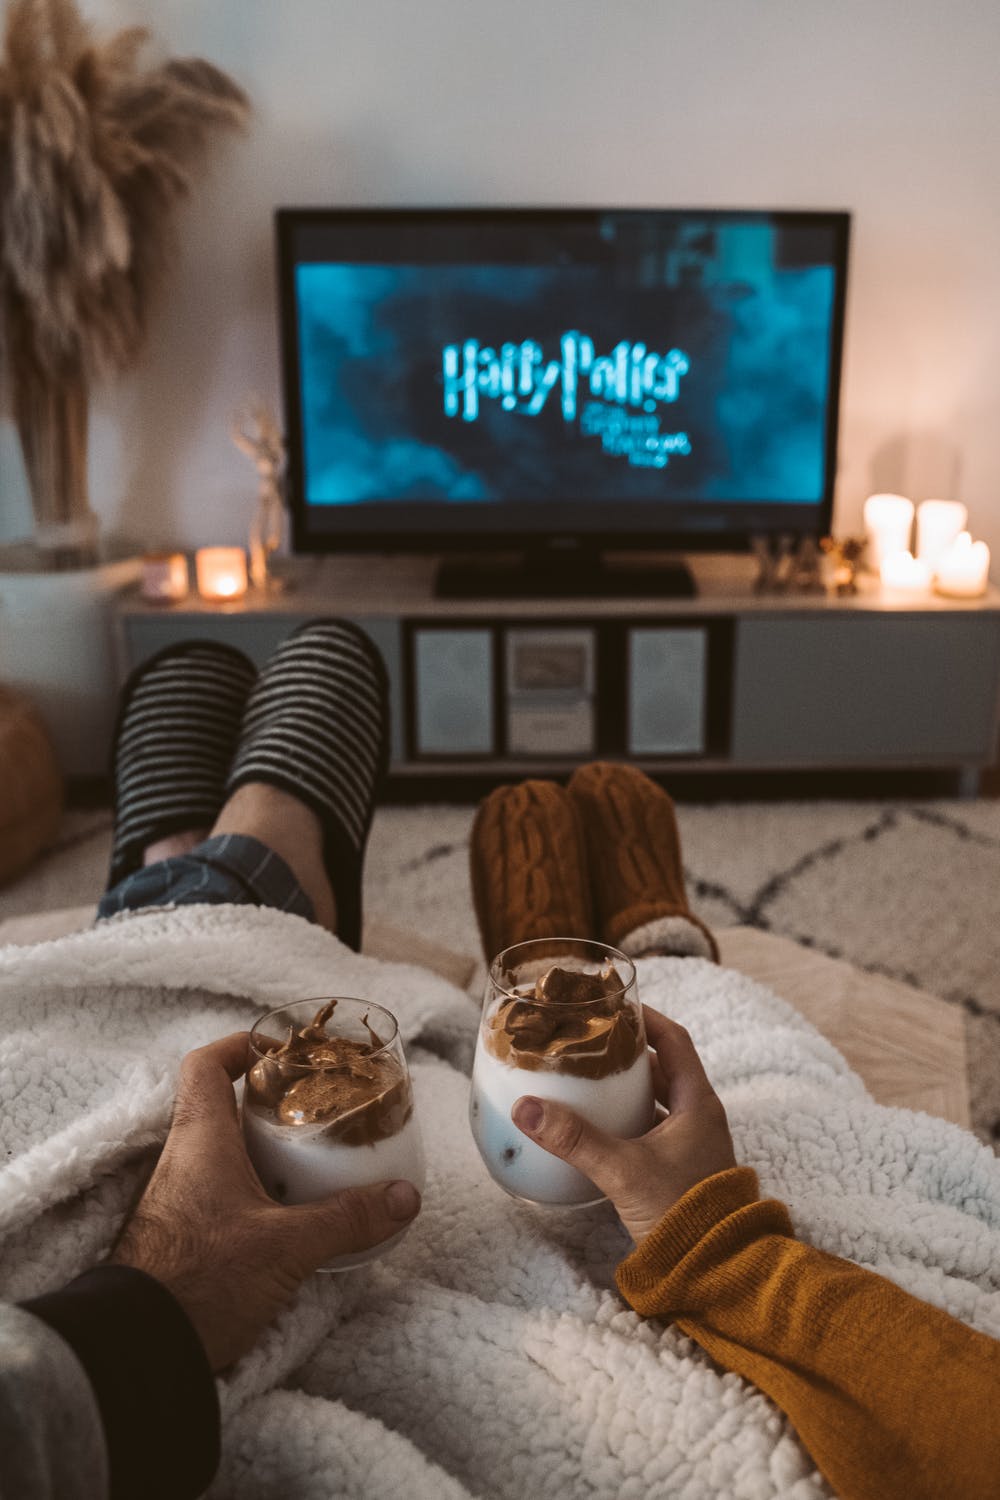 cặp đôi xem Harry Potter cùng nhau và trắc nghiệm nói gì về họ